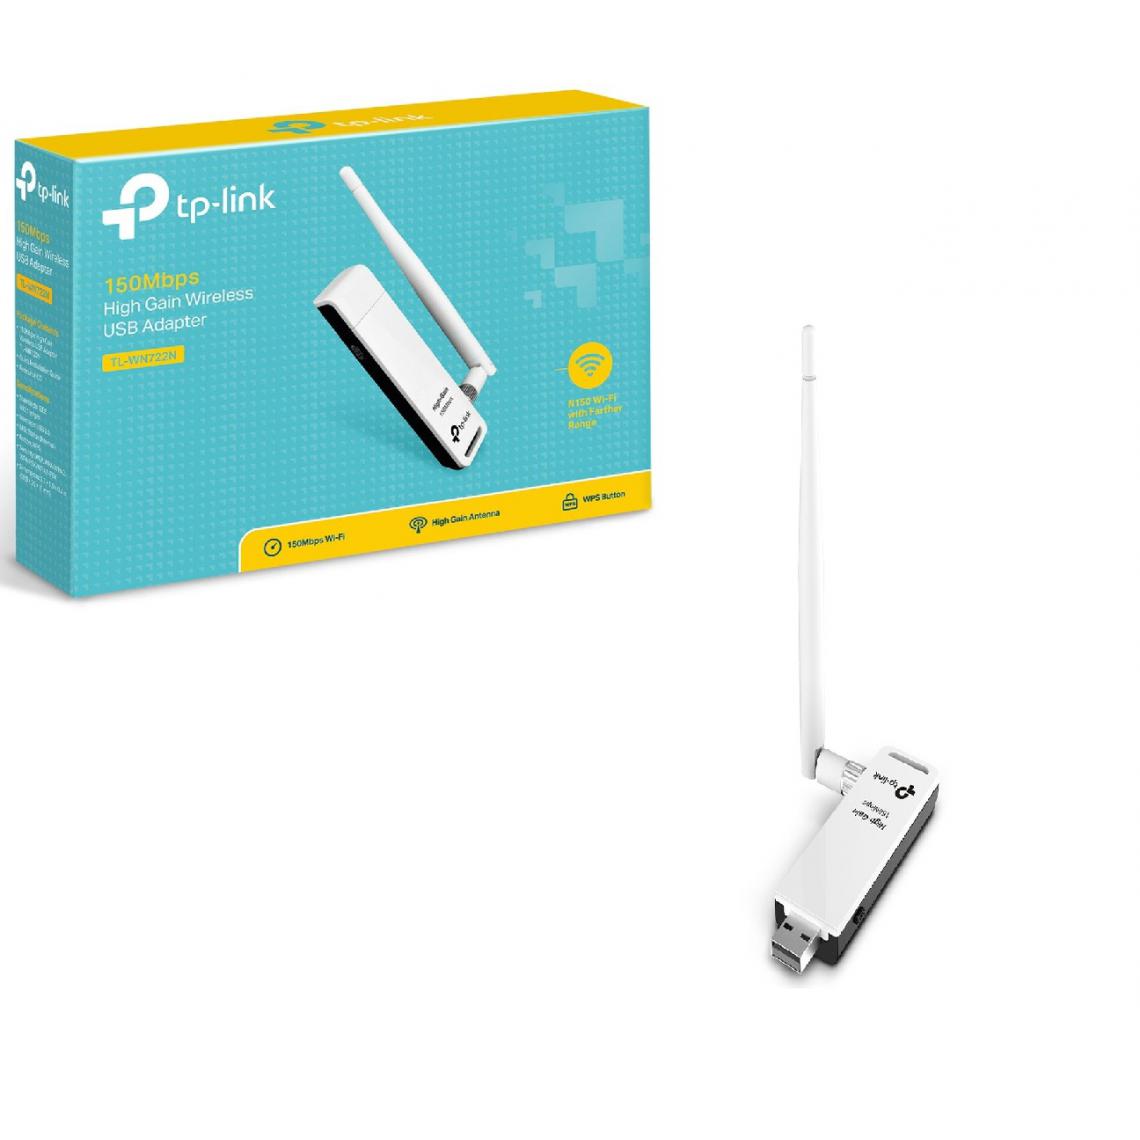 TP-LINK - Adaptateur USB WiFi TL-WN722N - Clé USB Wifi